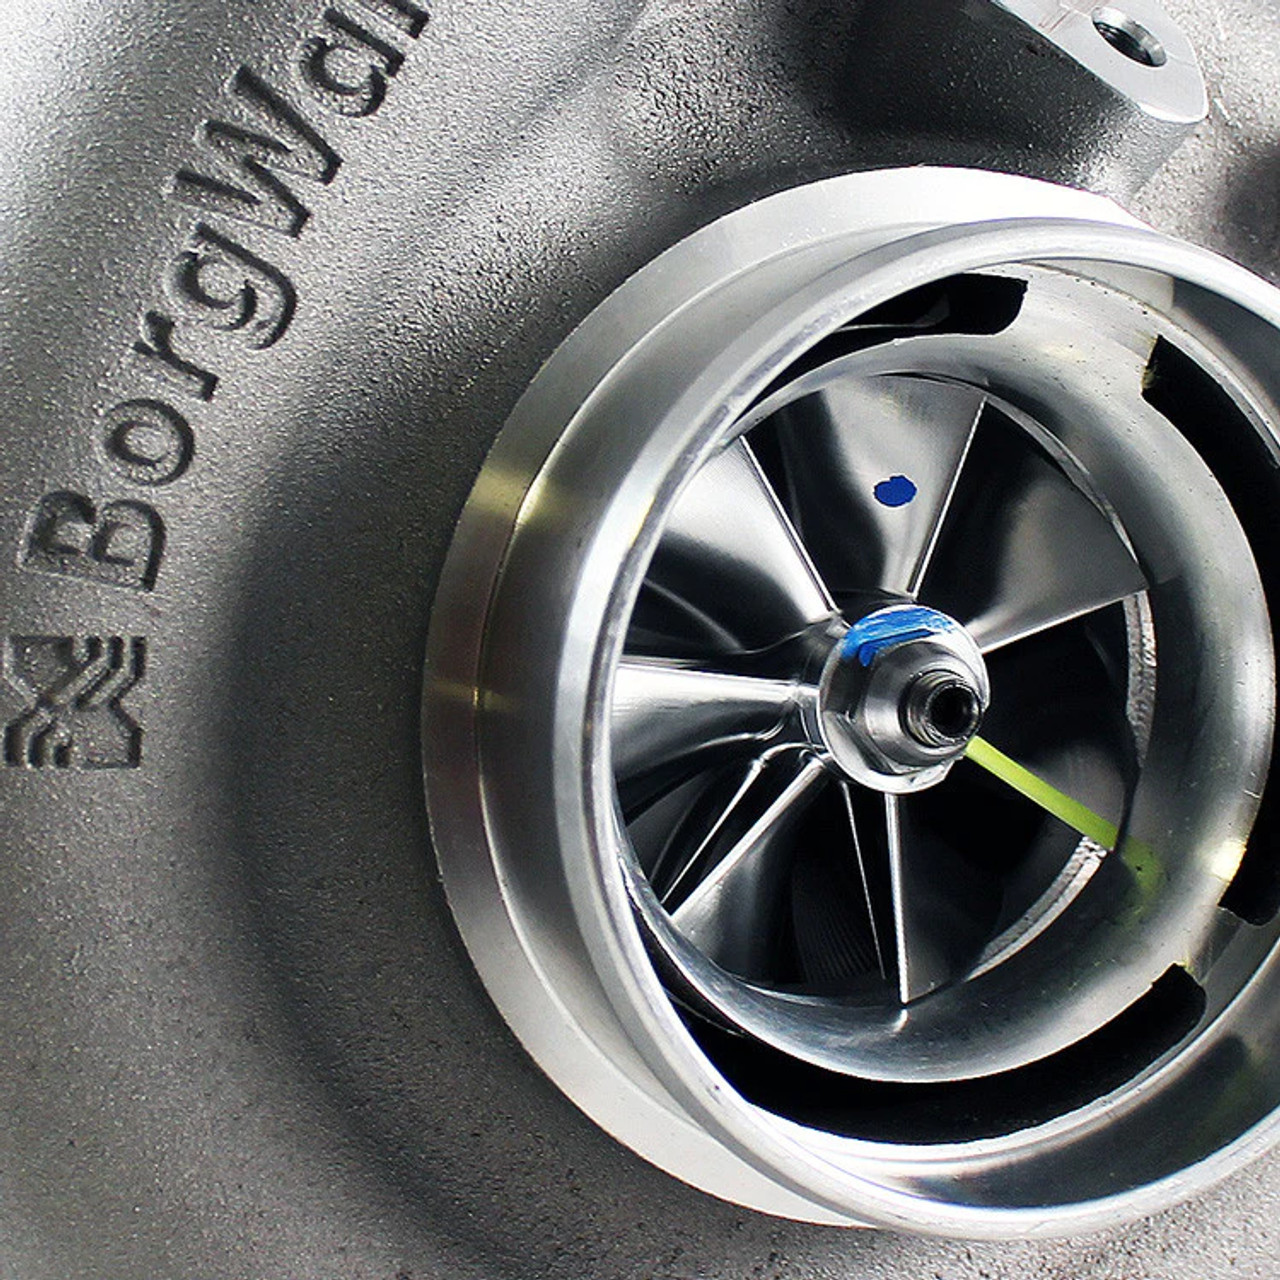 BorgWarner 66mm SX-E Turbo w/ 1.0 Turbine Housing for Universal Applications (565805-10) New View